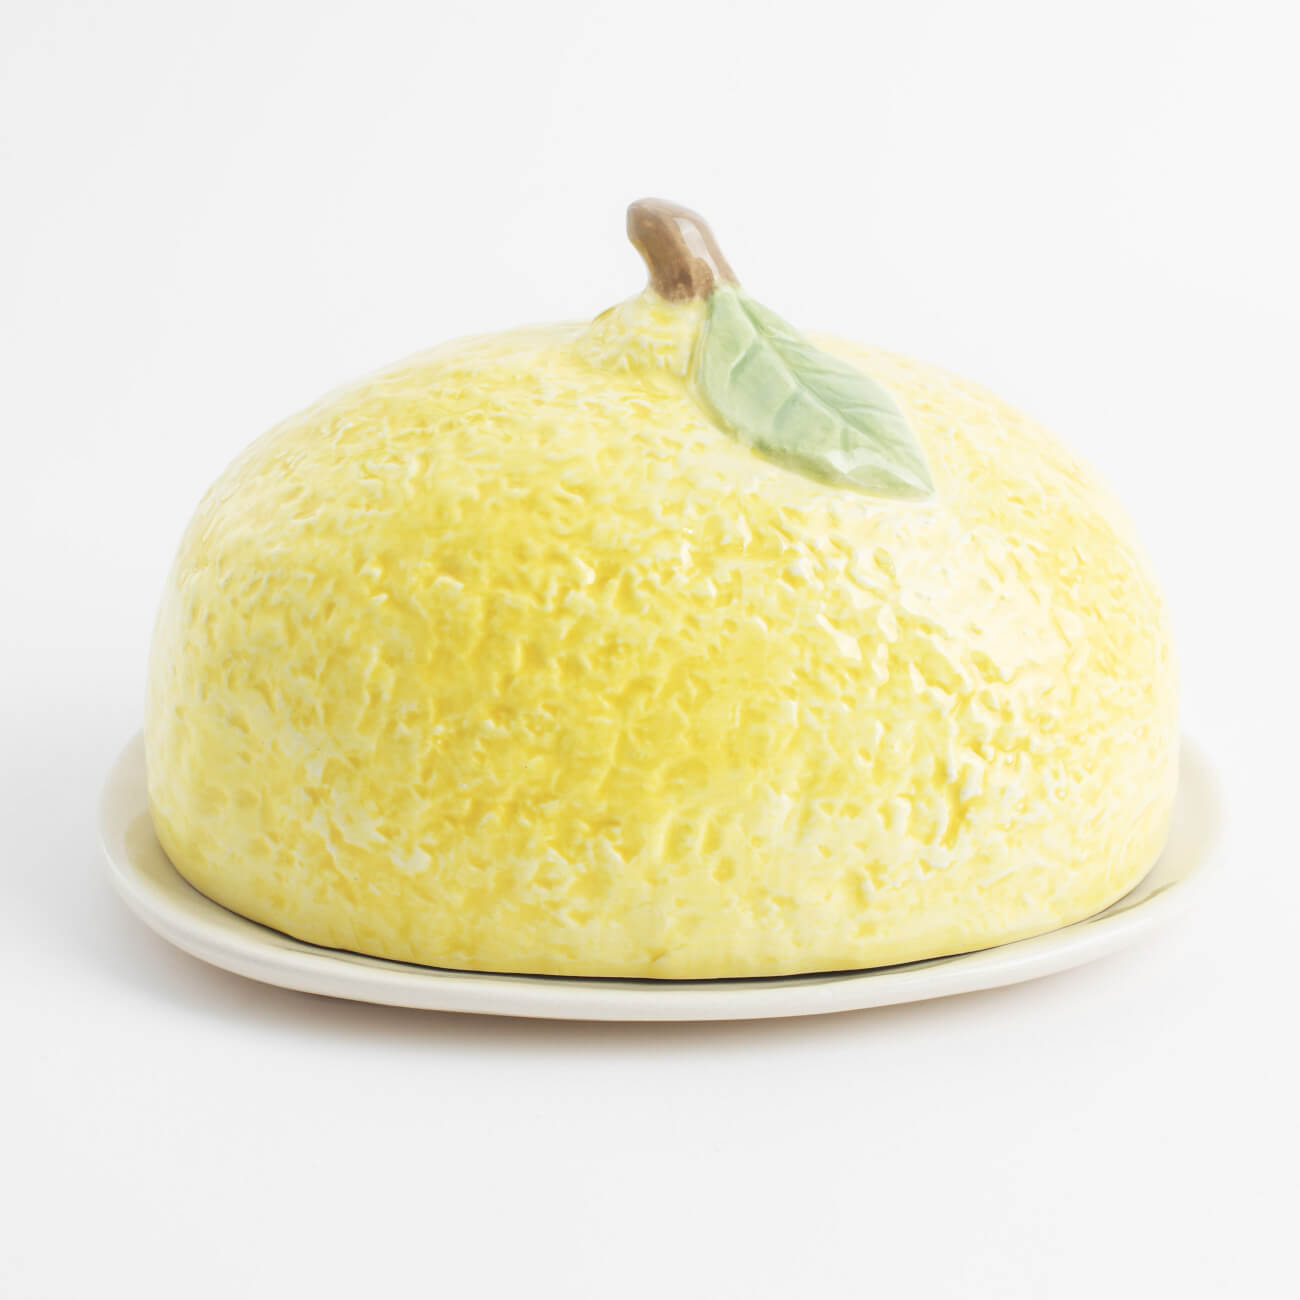 Масленка, 18 см, керамика, овальная, желтая, Лимон, Sicily in bloom масленка piusi